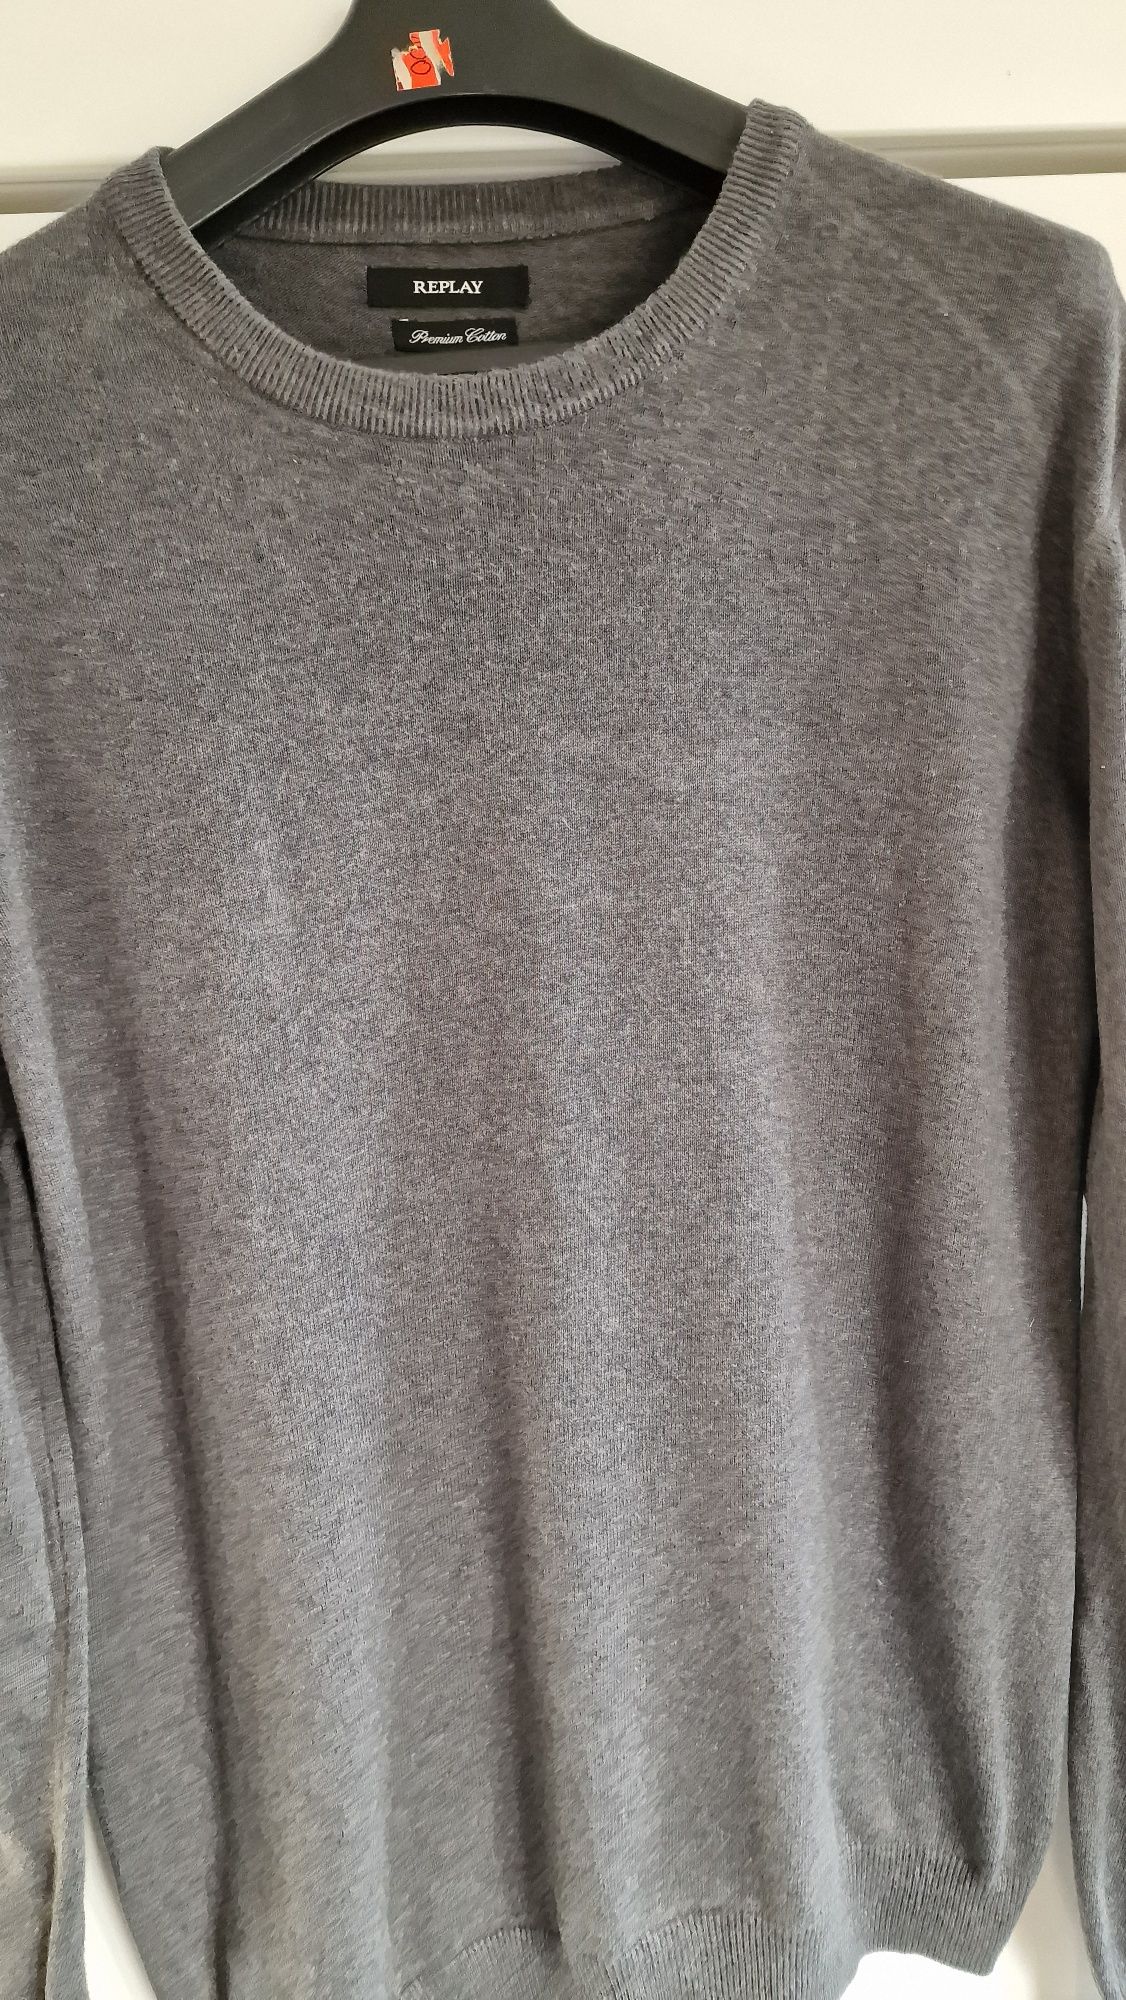 Ładny sweter męski  Replay
Długość całkowita 72cm 
Szerokość pod pacha